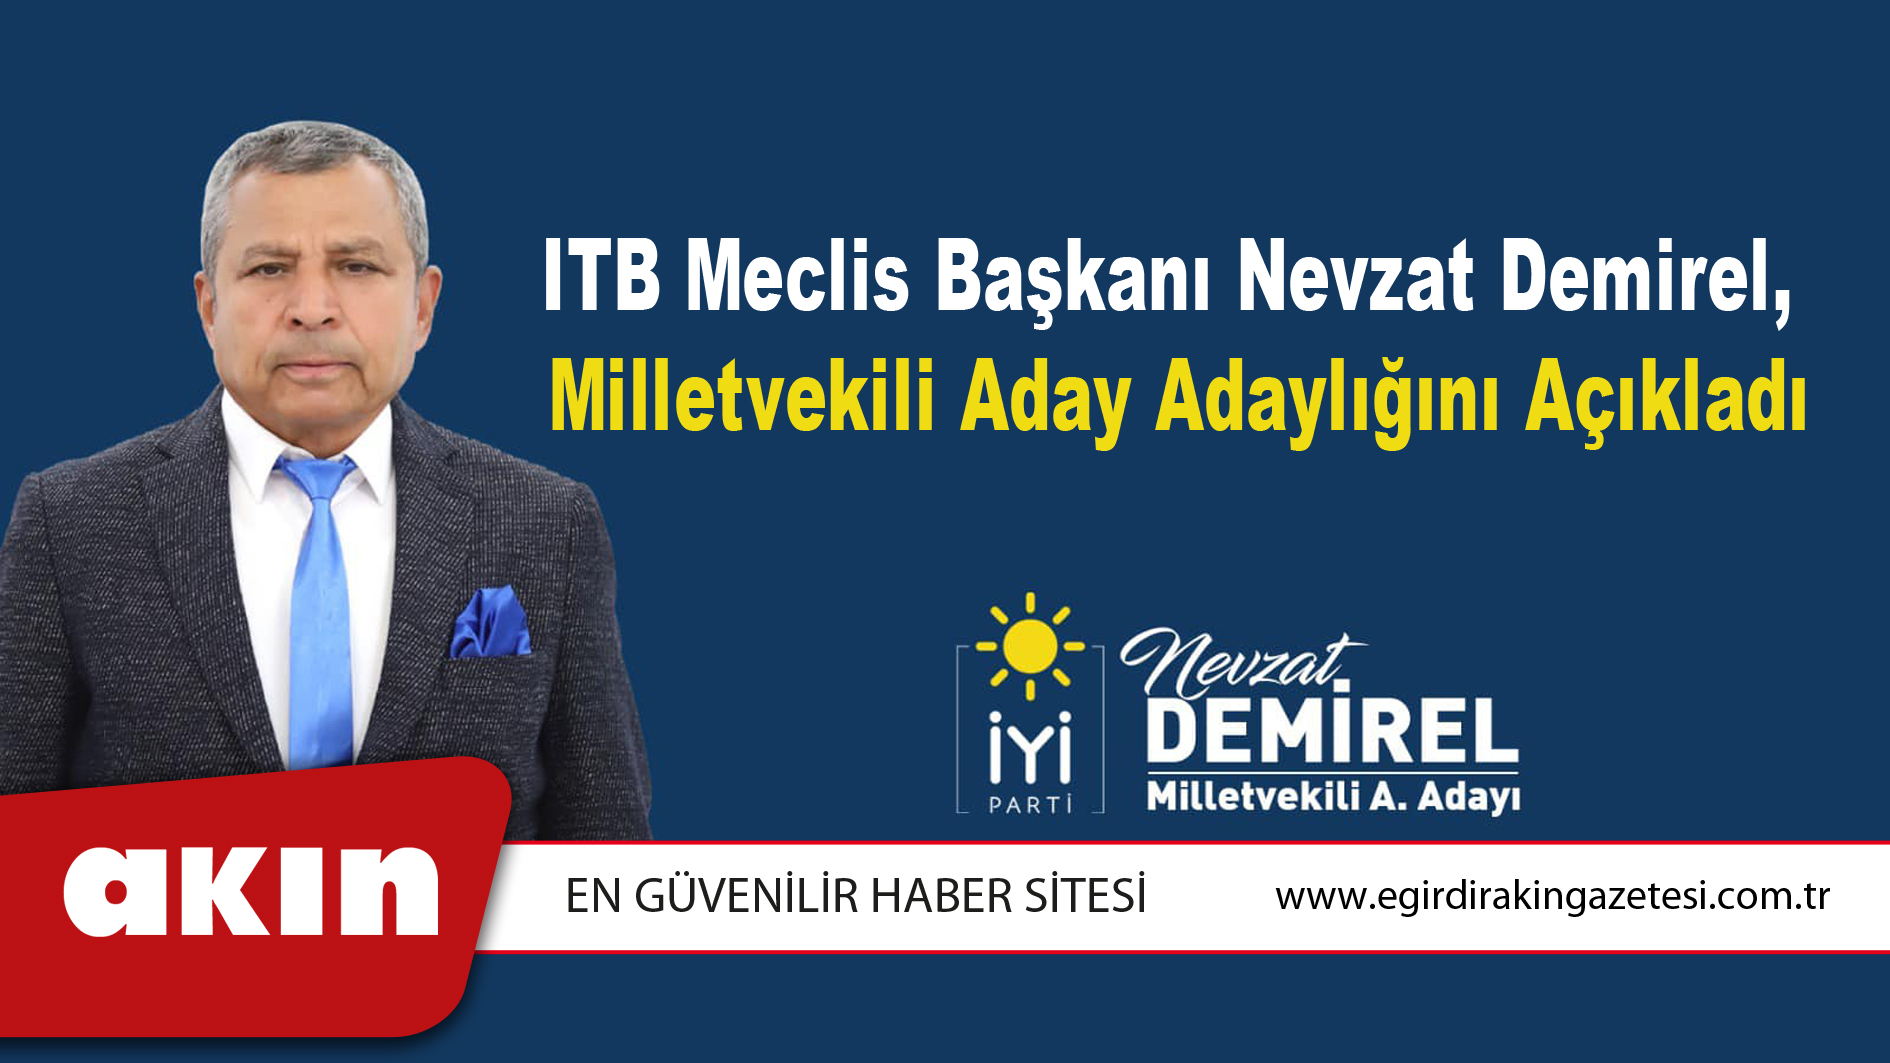 ITB Meclis Başkanı Nevzat Demirel, Milletvekili Aday Adaylığını Açıkladı